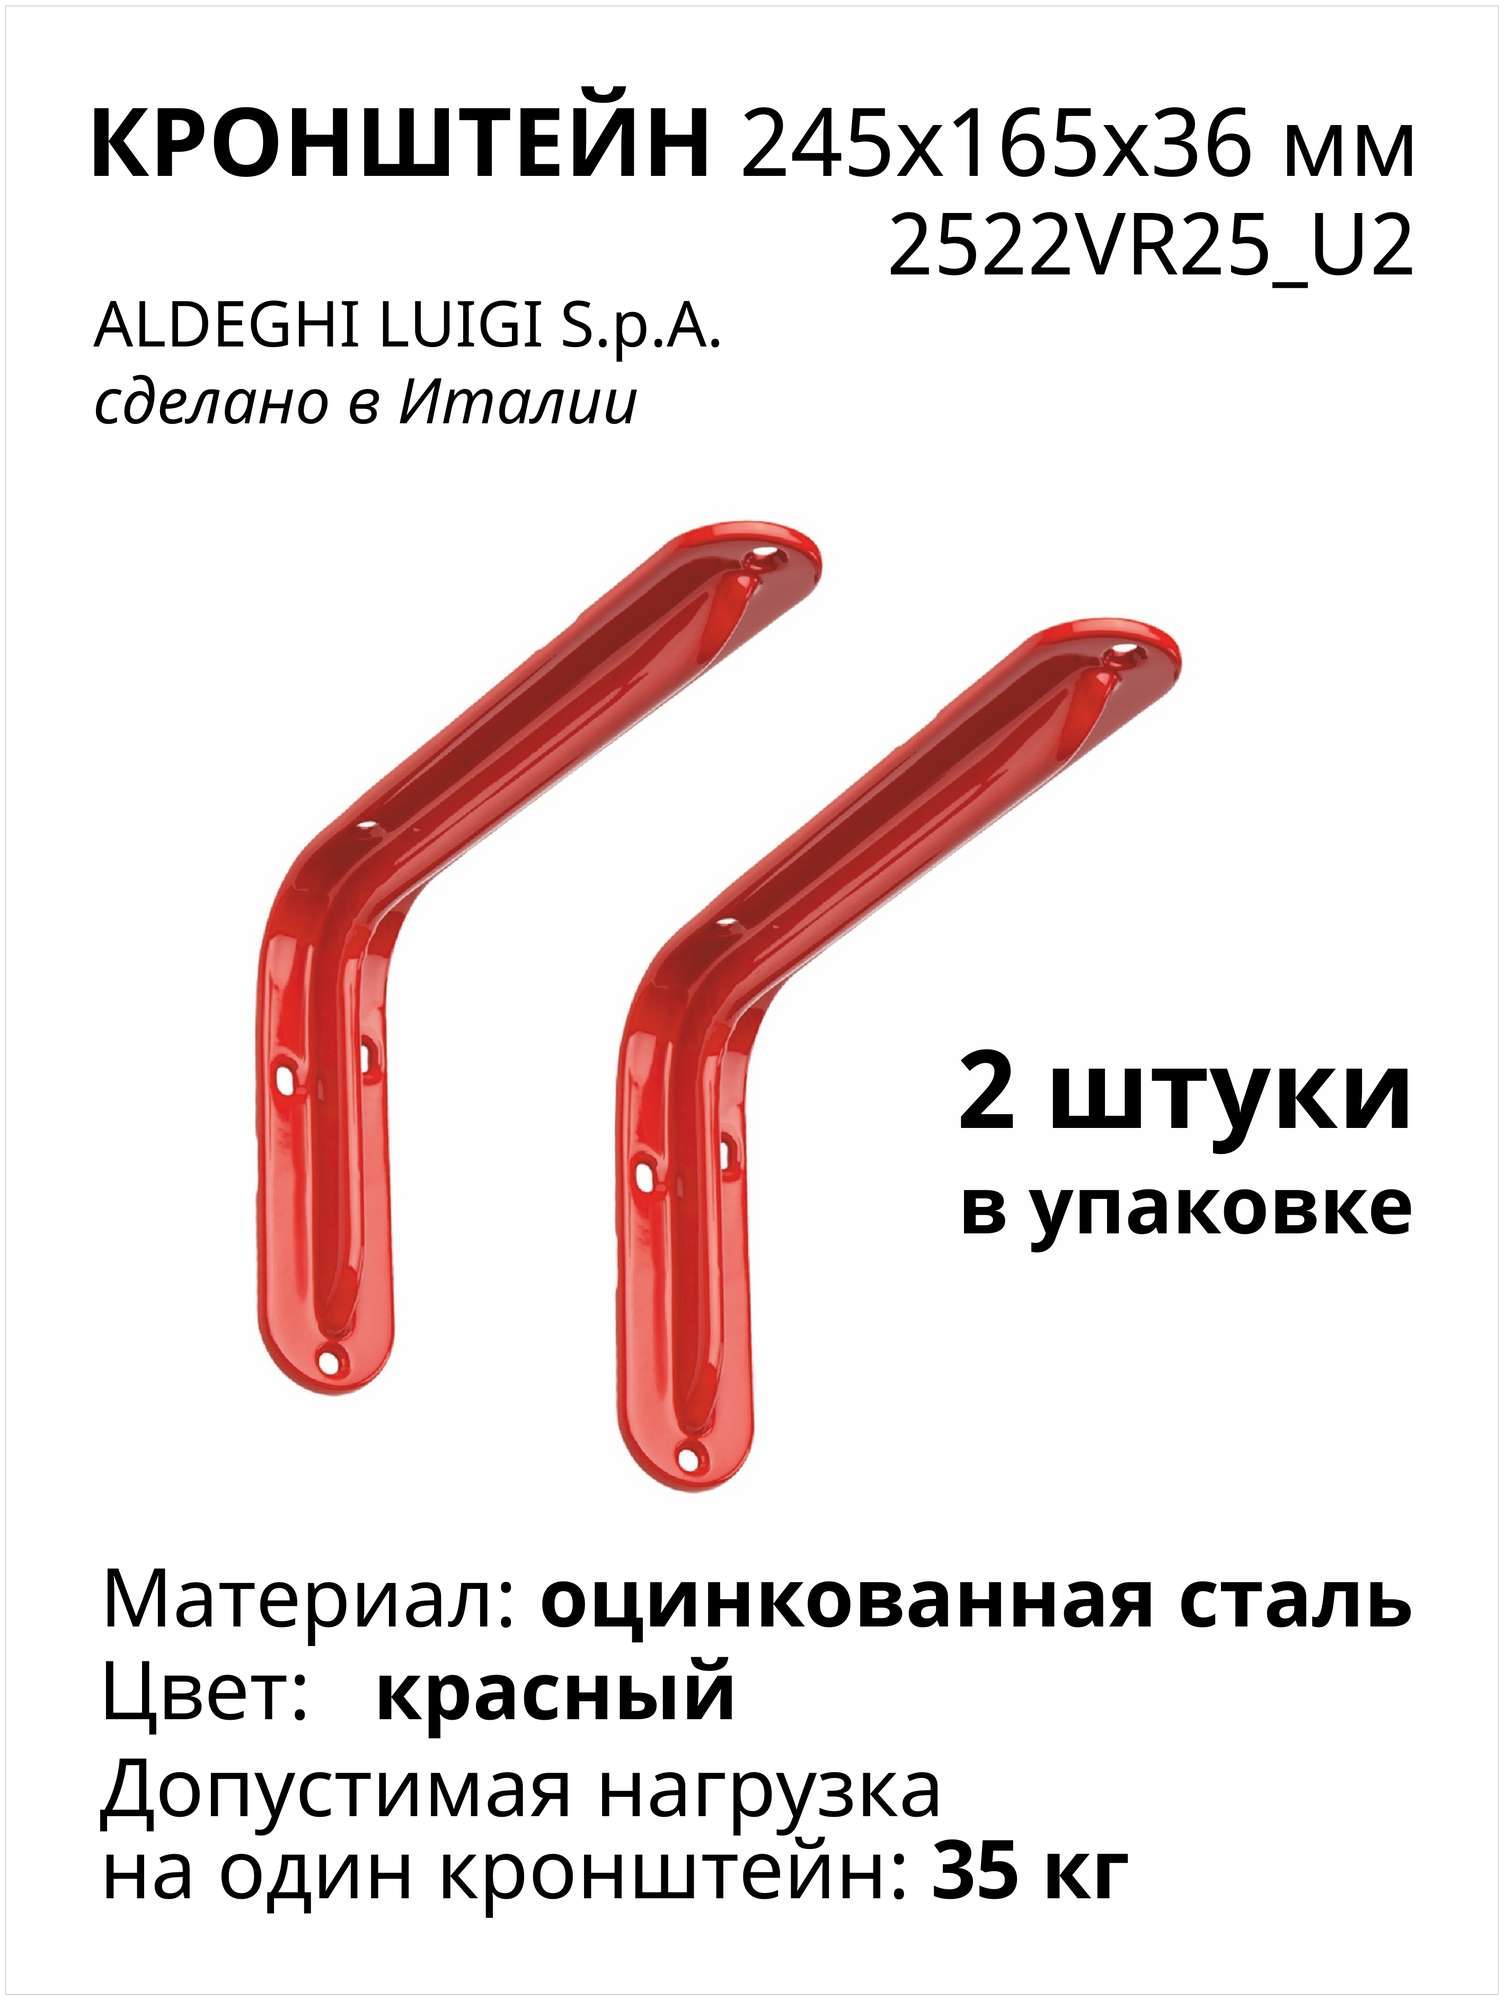 Кронштейн ALDEGHI LUIGI SPA 245х165х36 мм, оцинкованный, цвет: красный, 2шт 2522VR25_U2